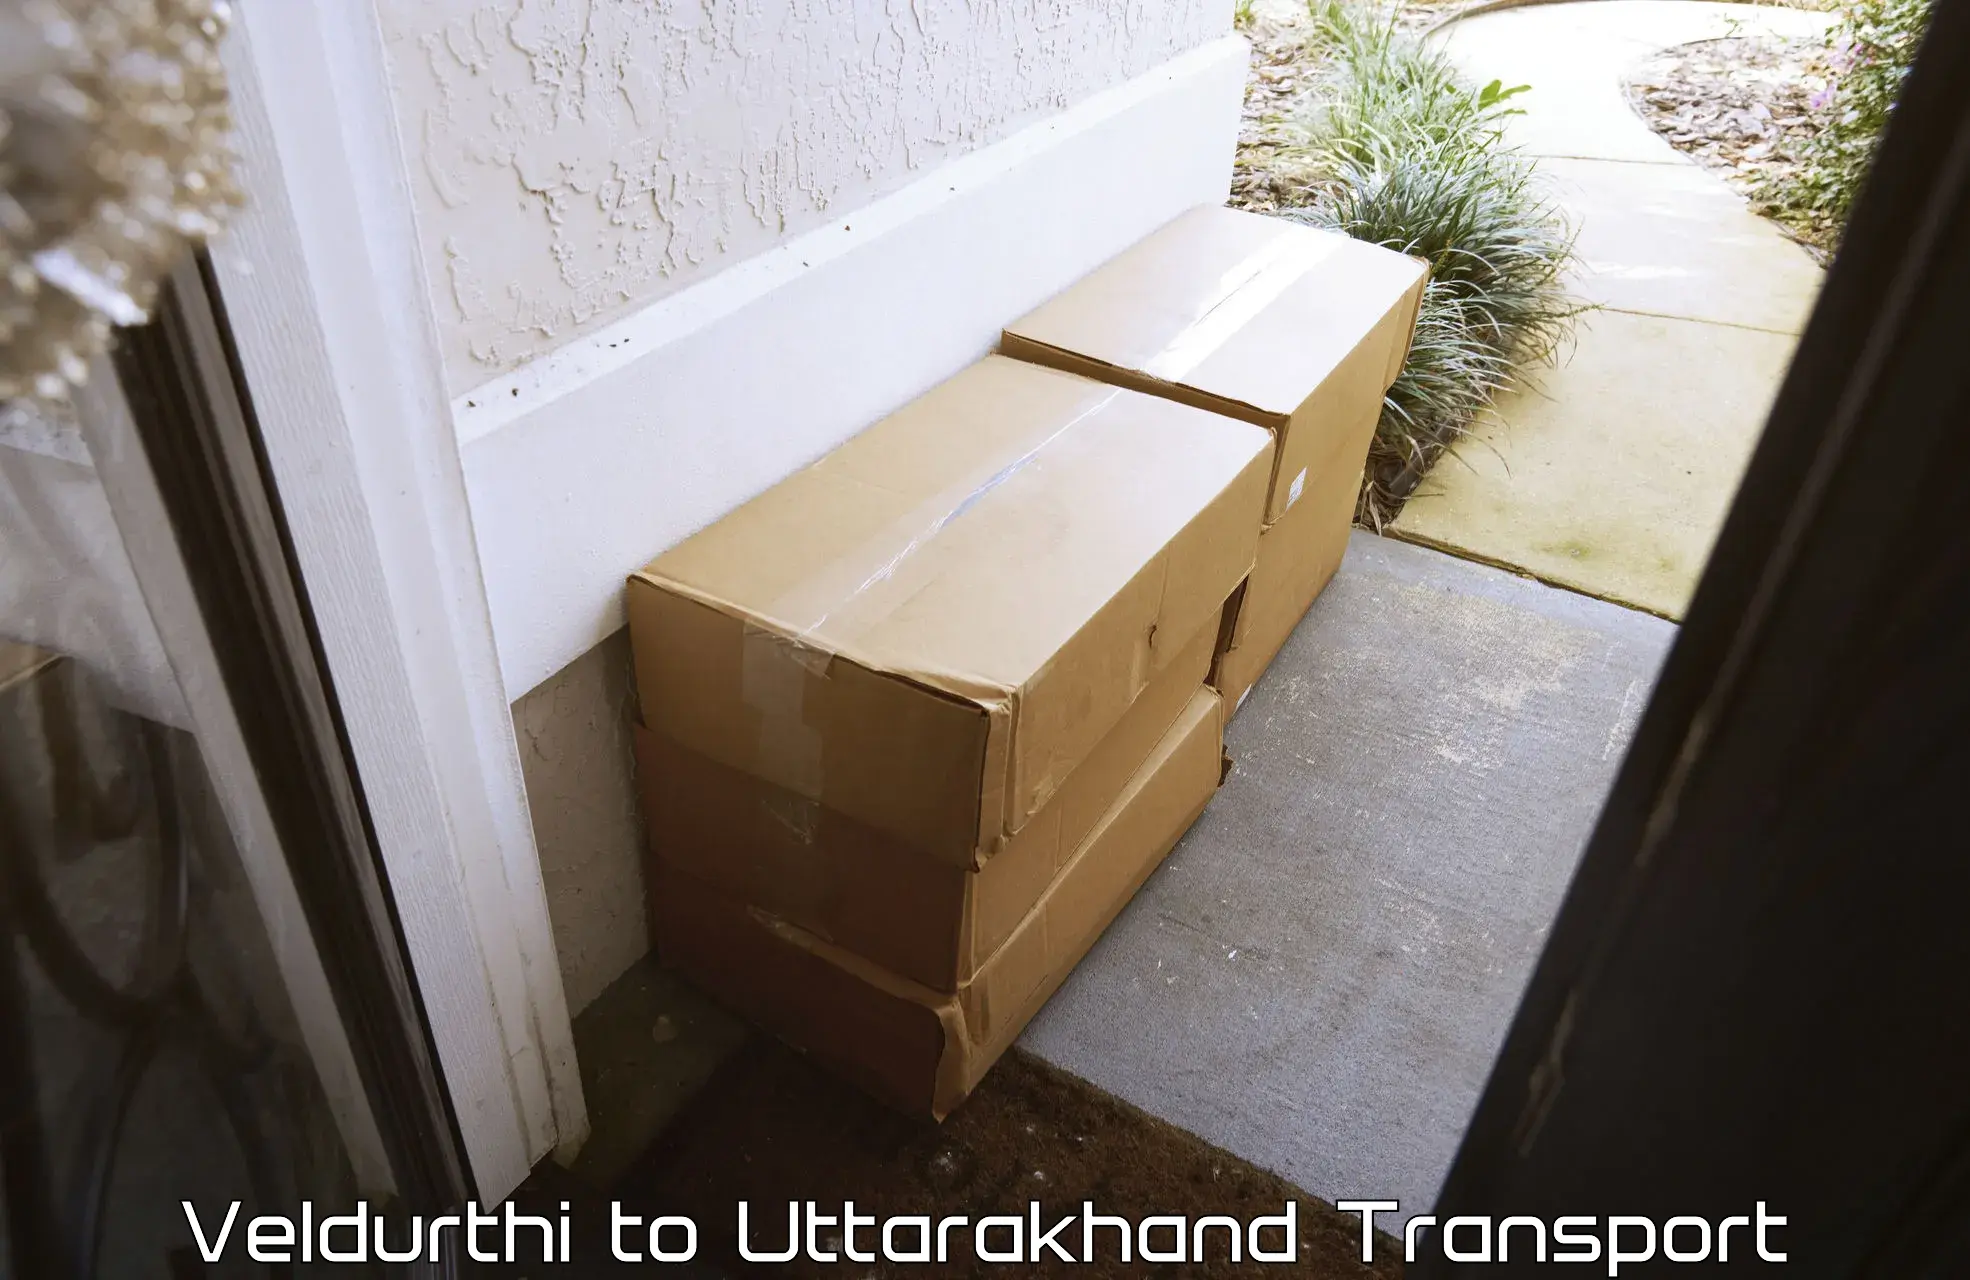 Luggage transport services Veldurthi to Uttarkashi